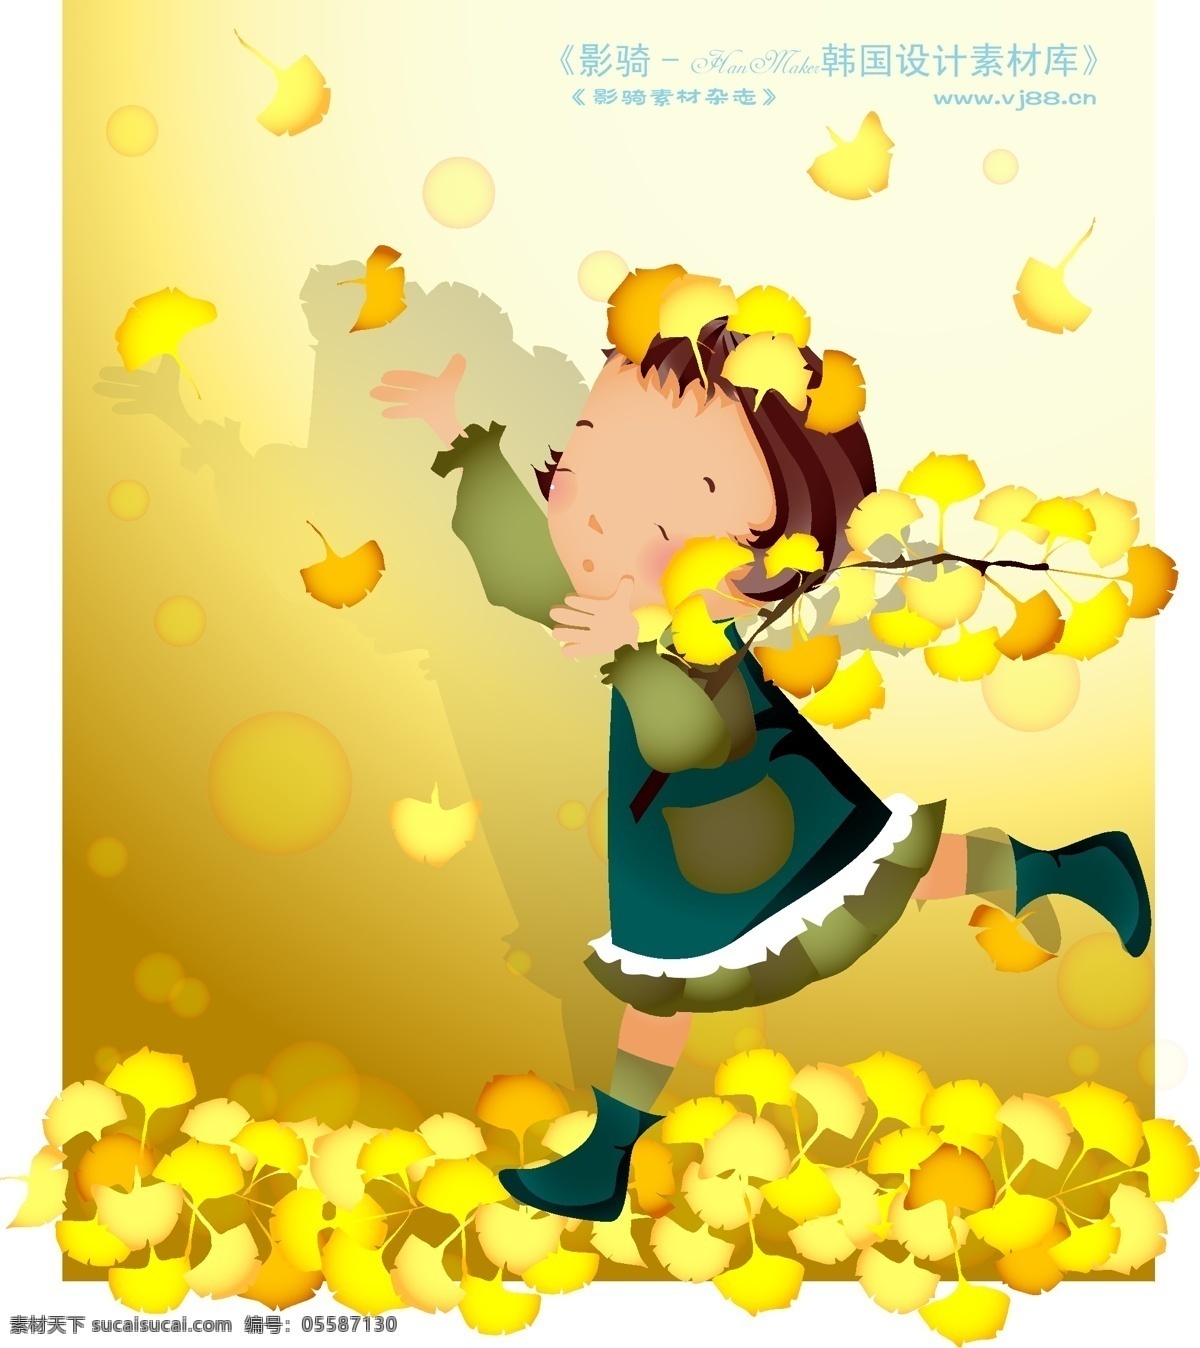 可爱小女孩 儿童 卡通人物 矢量 ai0137 设计素材 漫画儿童 矢量图库 黄色